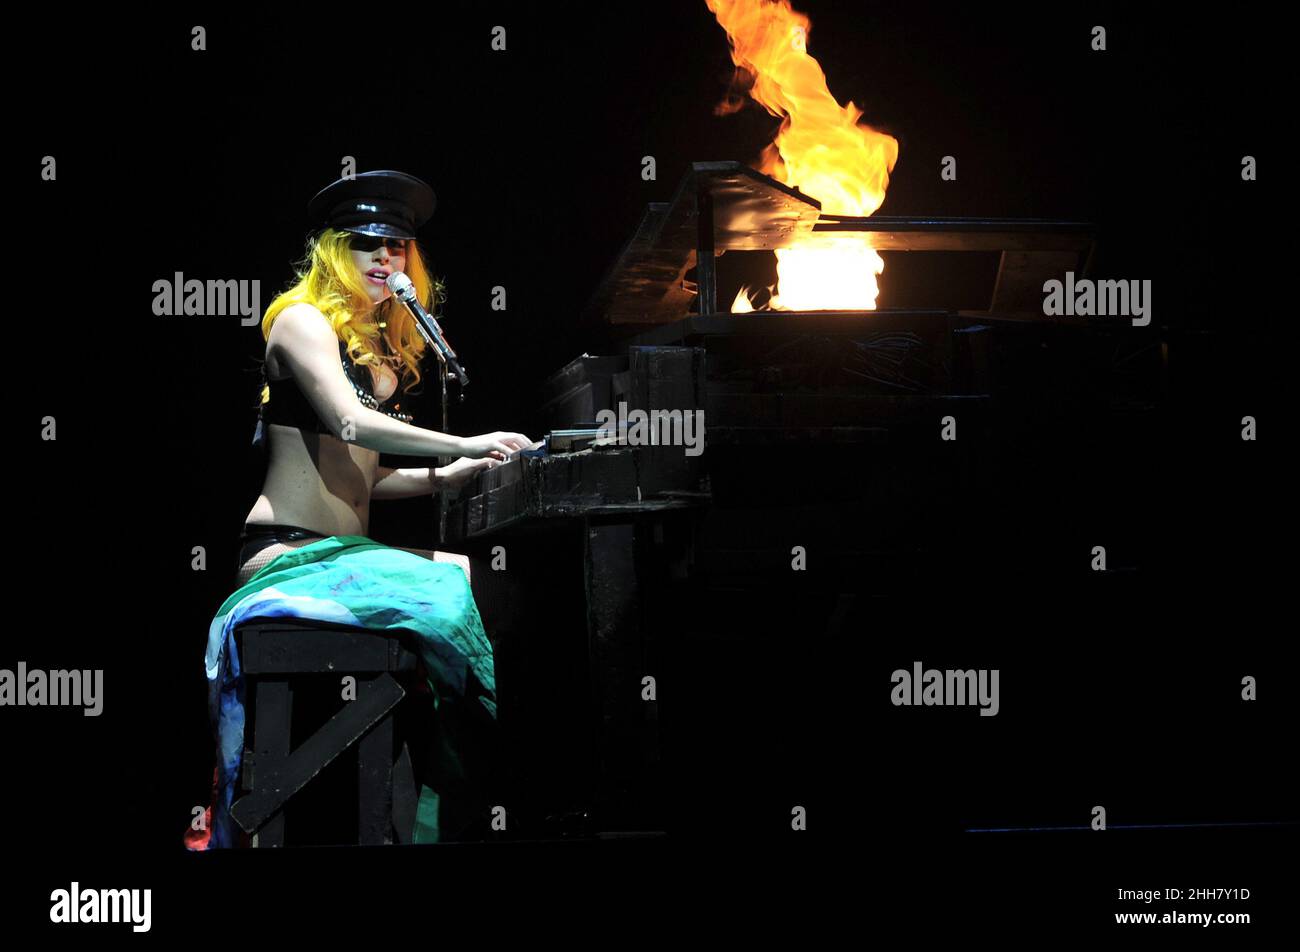 Turin Italien 2010-11-09 : Live-Konzert der amerikanischen Singer-Songwriterin Lady Gaga im Palaolimpico, der Monster Ball Tour Stockfoto